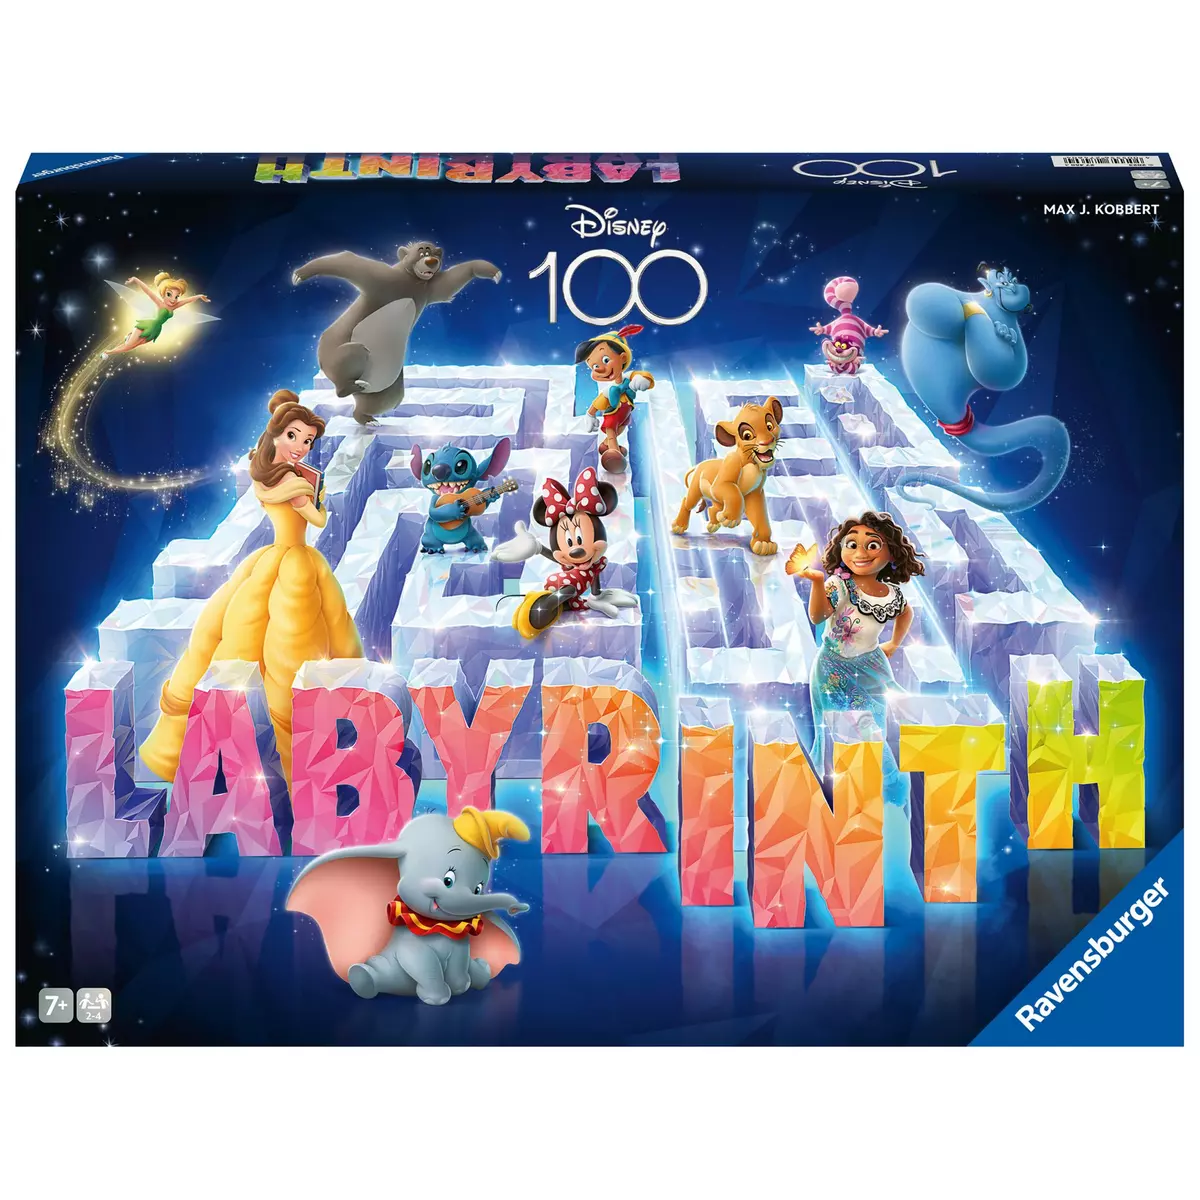 BANDAI Jeu Labyrinthe Disney 100ème pas cher 